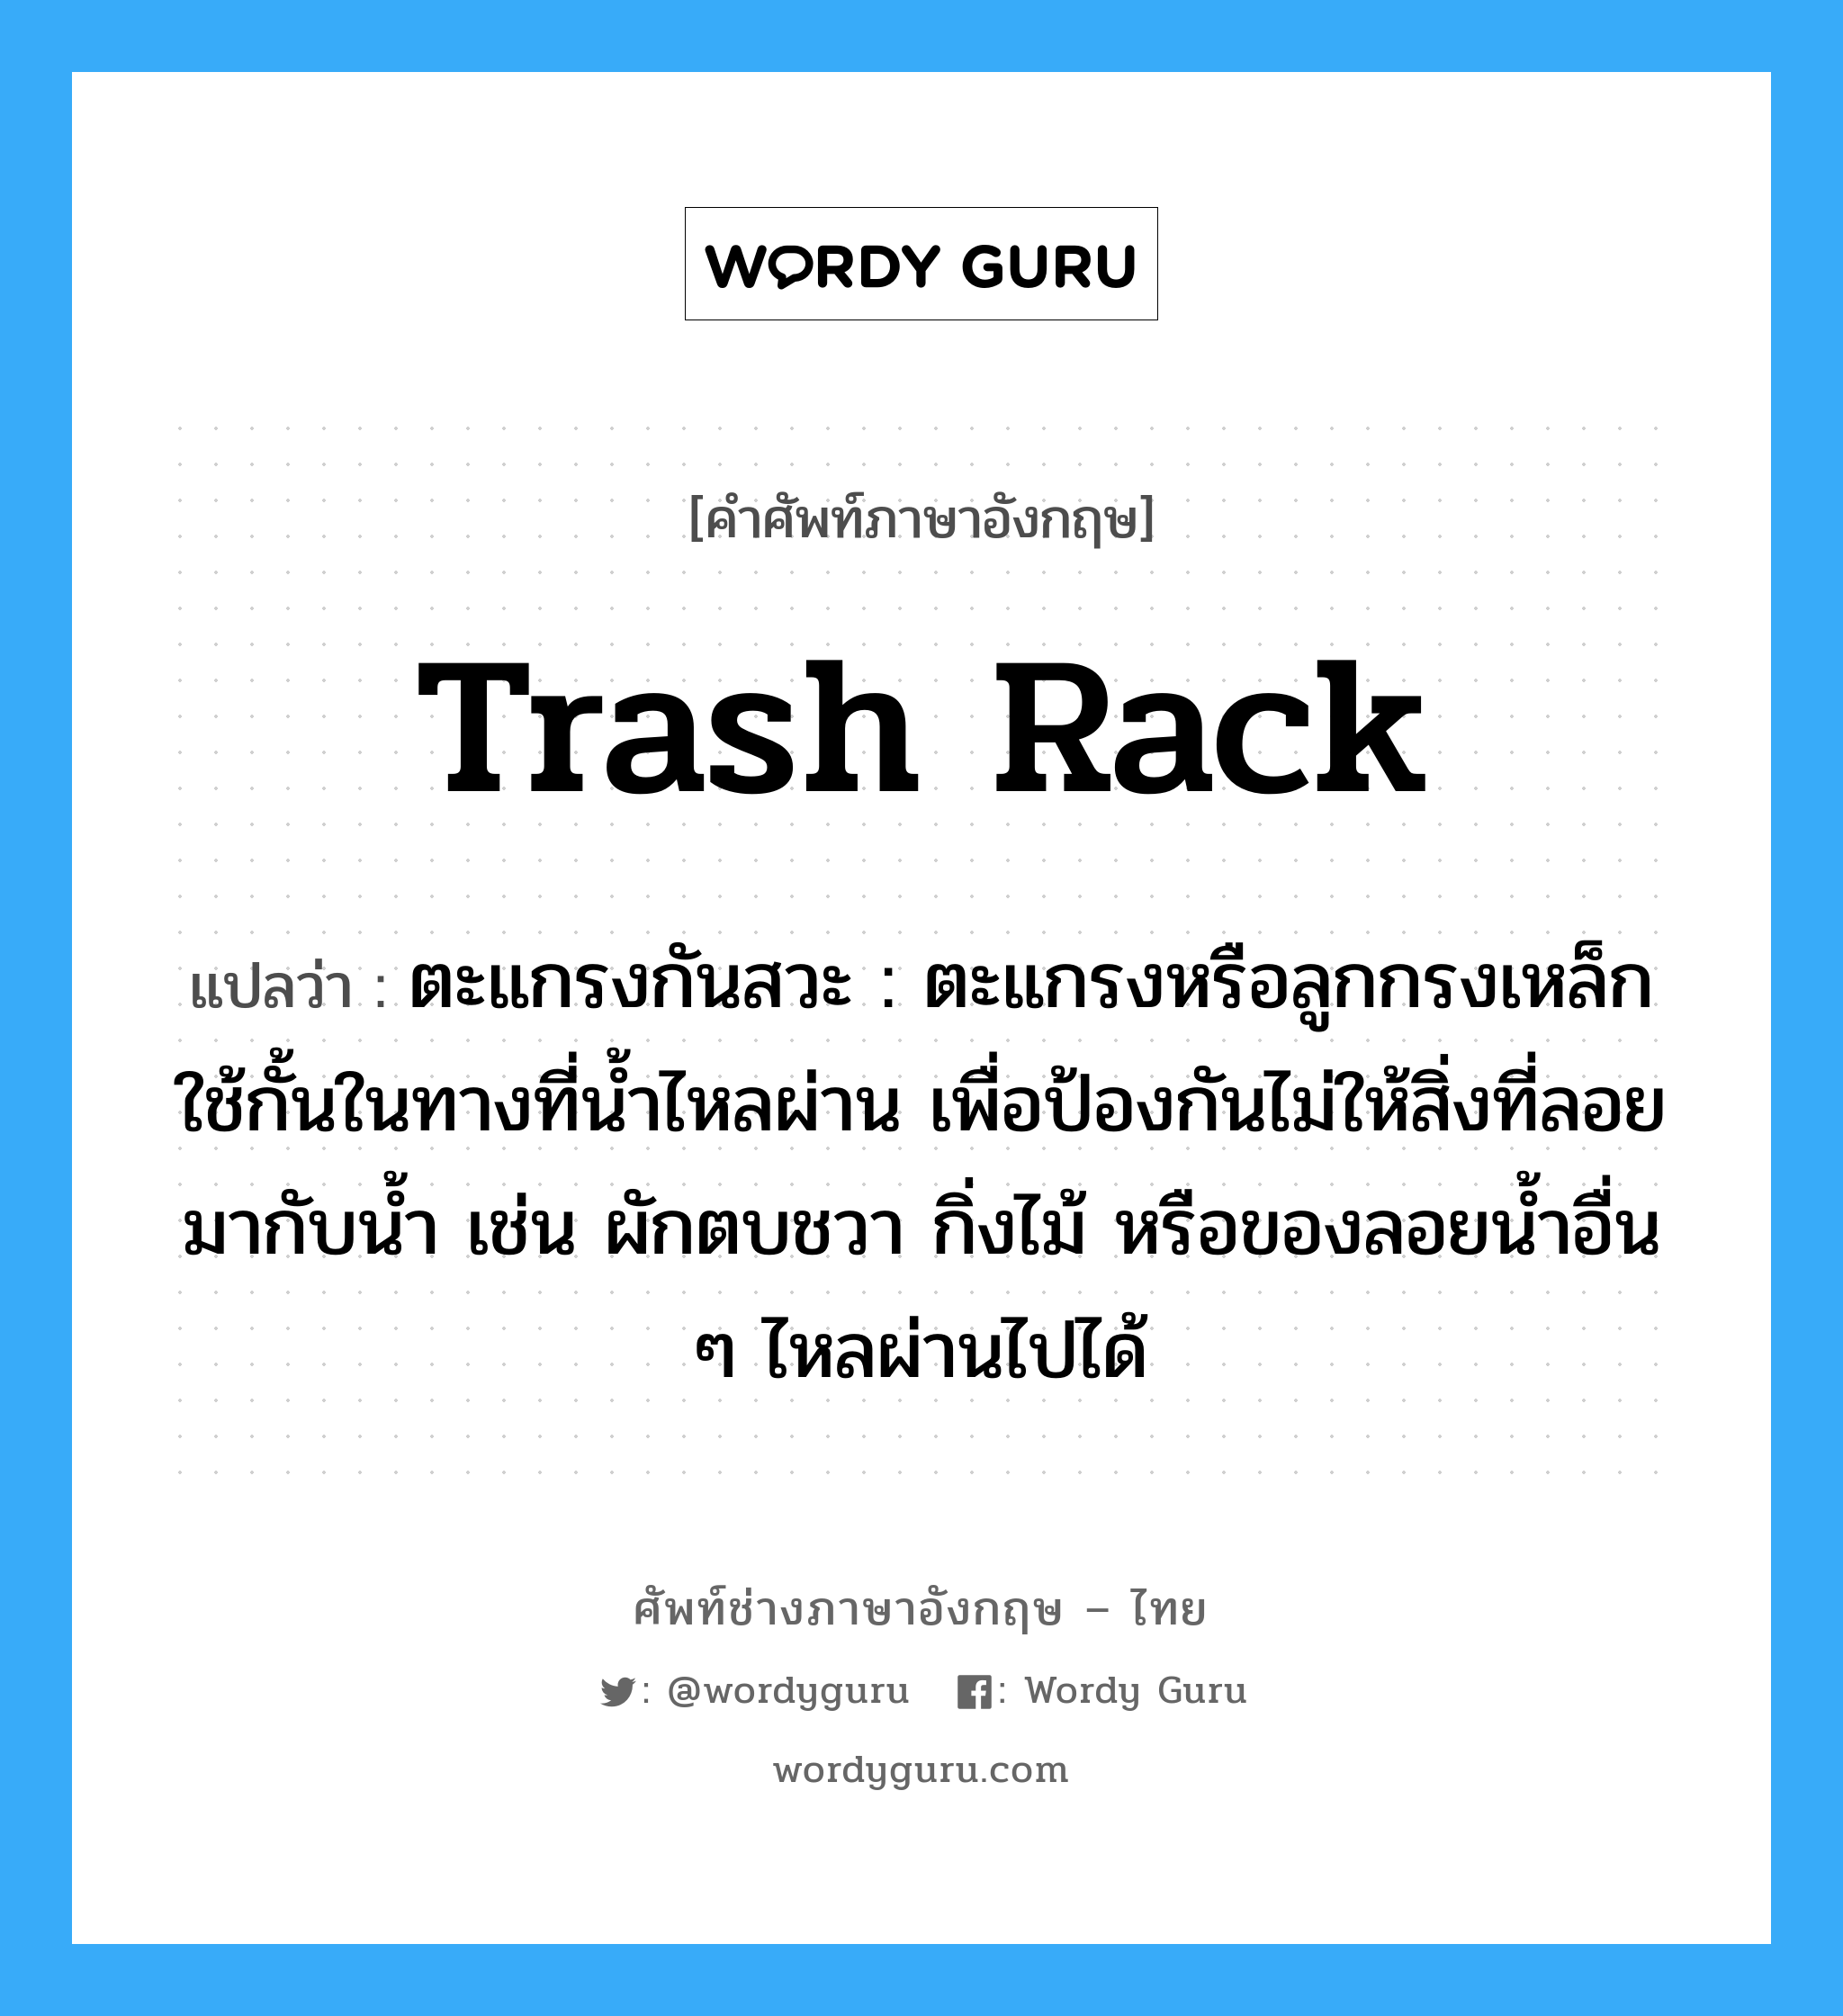 trash rack แปลว่า?, คำศัพท์ช่างภาษาอังกฤษ - ไทย trash rack คำศัพท์ภาษาอังกฤษ trash rack แปลว่า ตะแกรงกันสวะ : ตะแกรงหรือลูกกรงเหล็กใช้กั้นในทางที่น้ำไหลผ่าน เพื่อป้องกันไม่ให้สิ่งที่ลอยมากับน้ำ เช่น ผักตบชวา กิ่งไม้ หรือของลอยน้ำอื่น ๆ ไหลผ่านไปได้